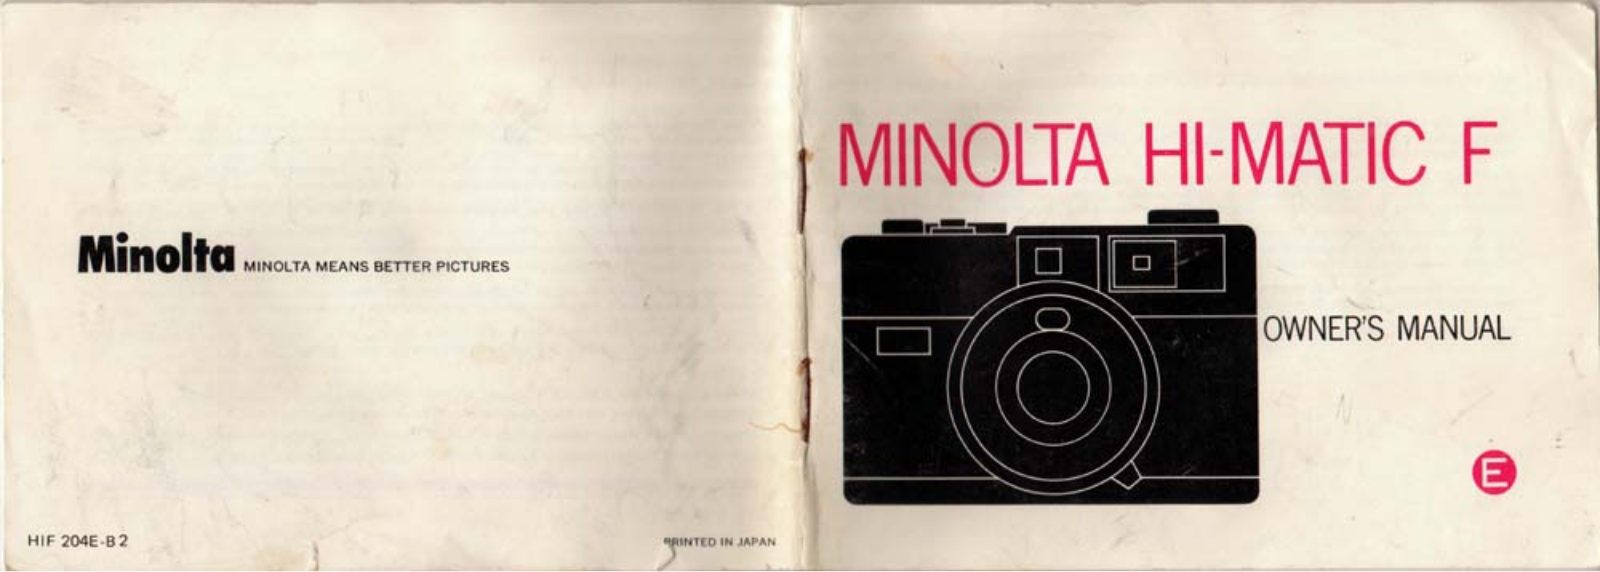 MINOLTA Hi-Matic F Owner's Manual